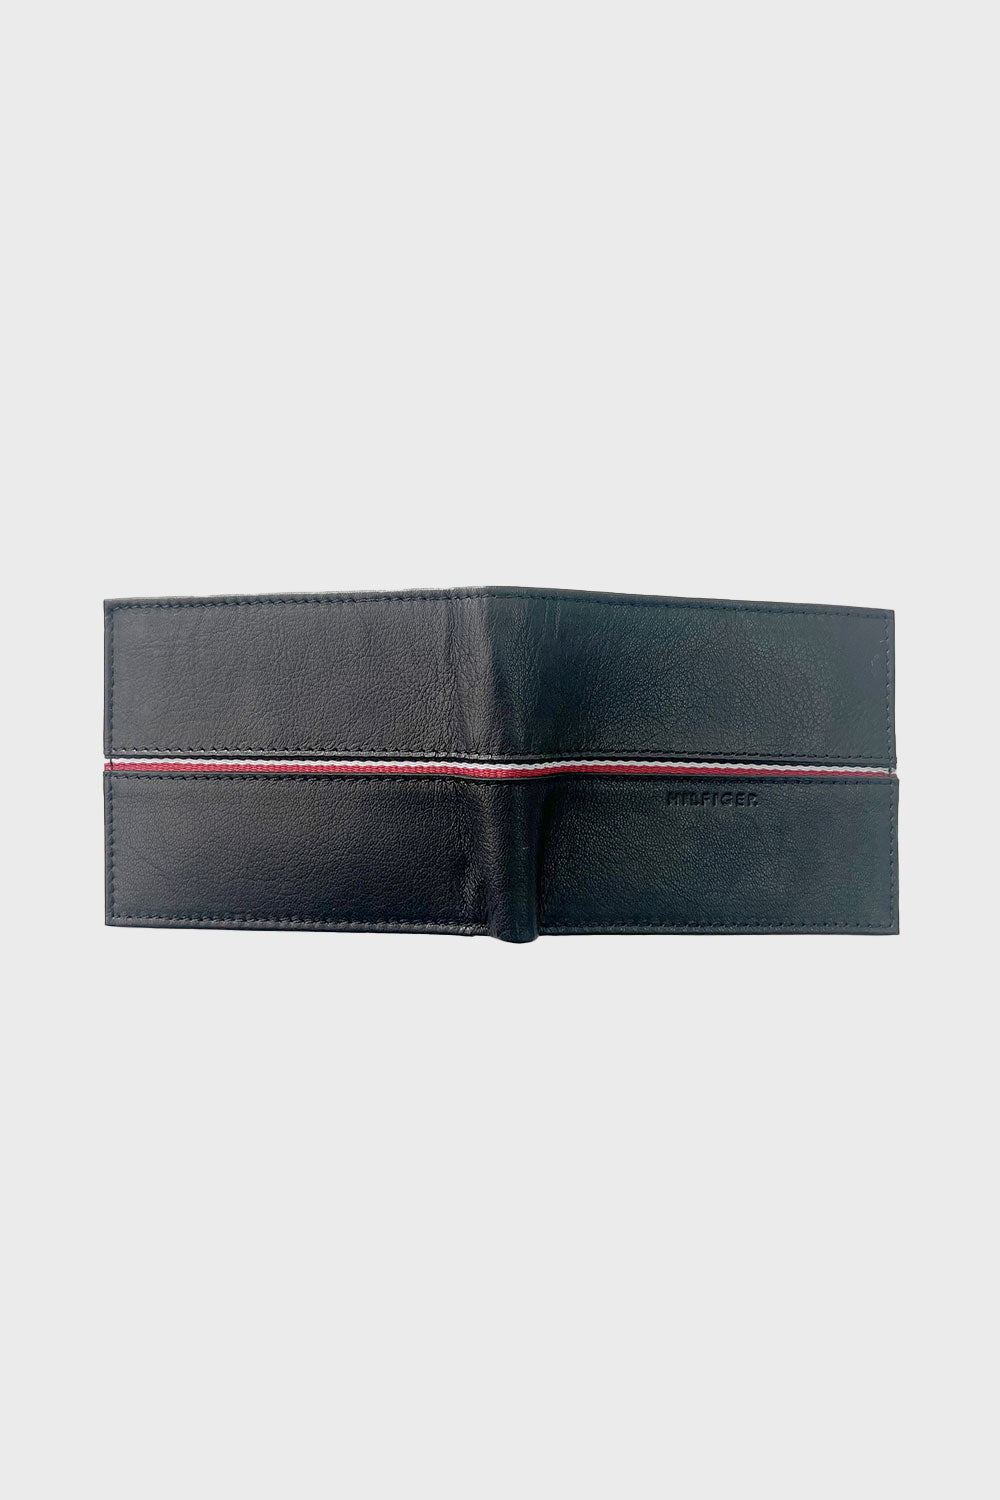 Tommy Hilfiger ארנק עור בצבע שחור לגברים-Tommy Hilfiger-One Size-נאקו